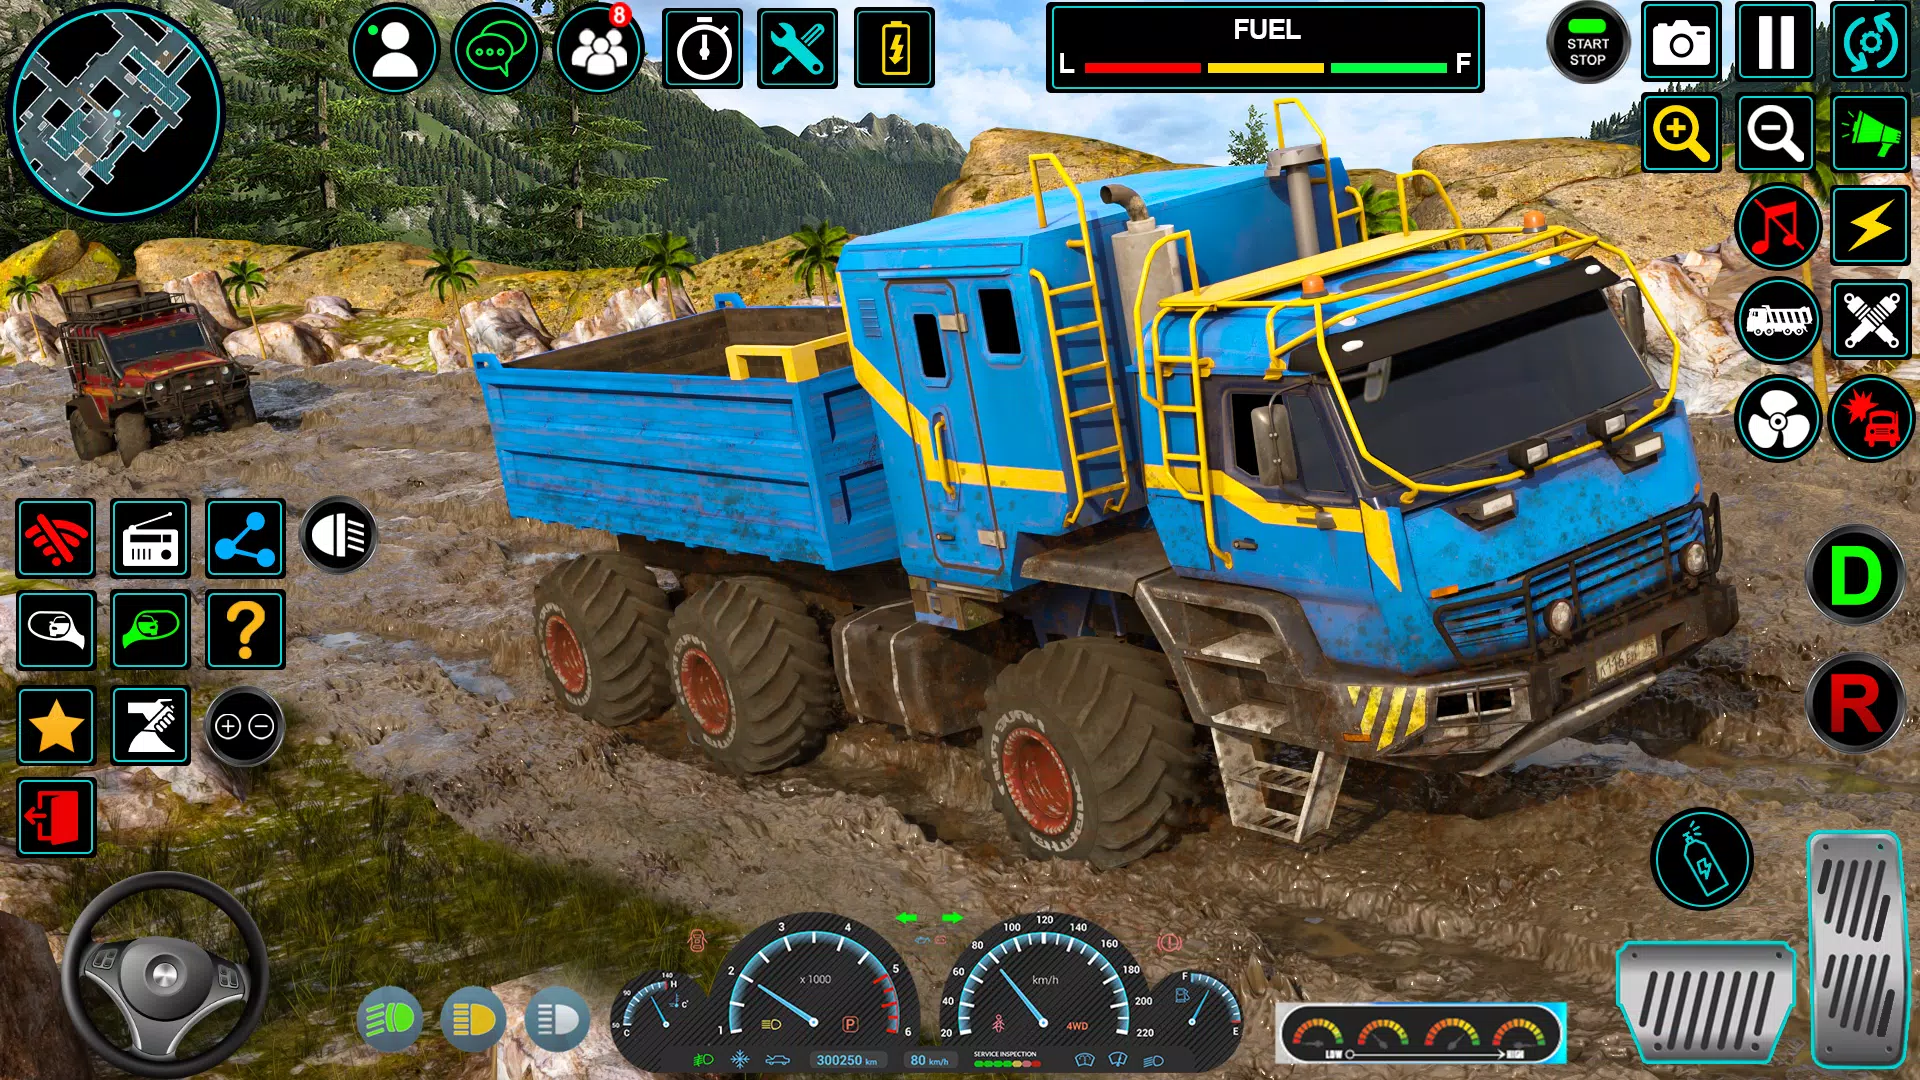 Download do APK de jogo de caminhão de lama brasi para Android